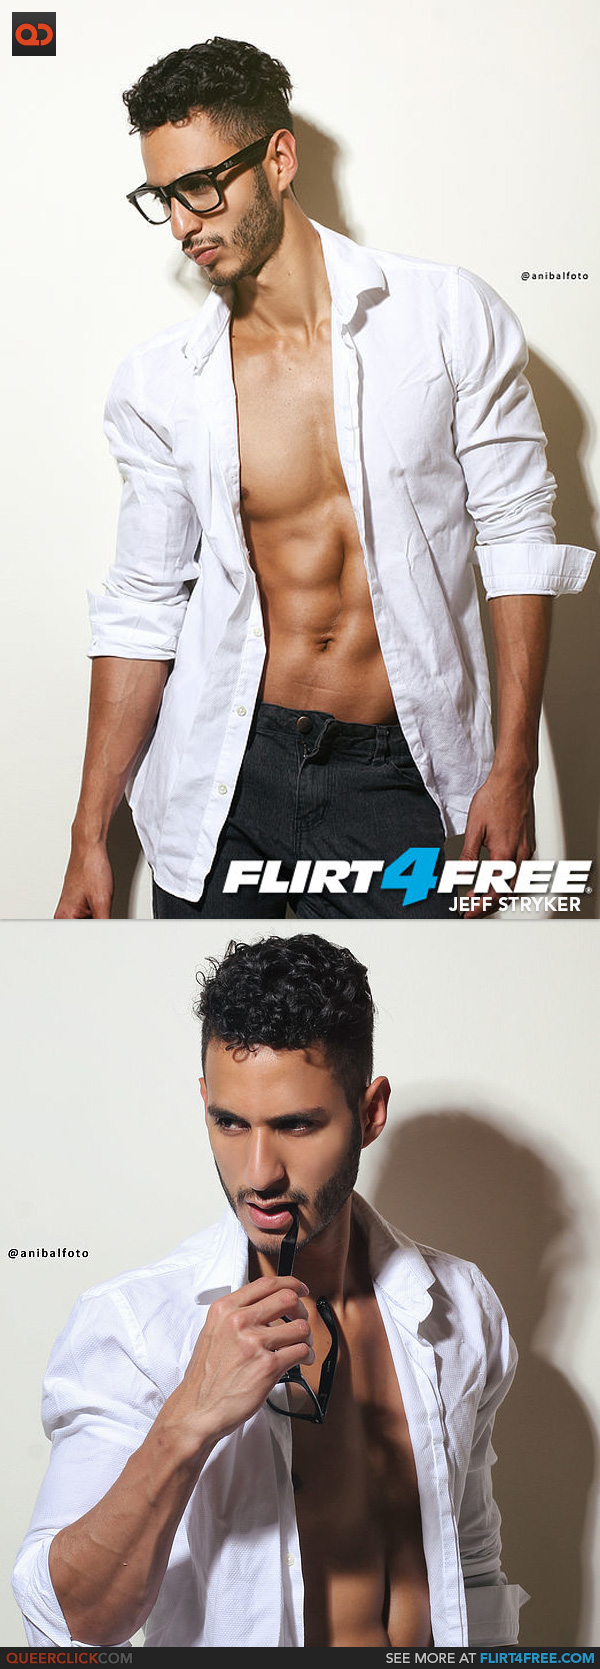 Flirt4Free: Jeff Stryker